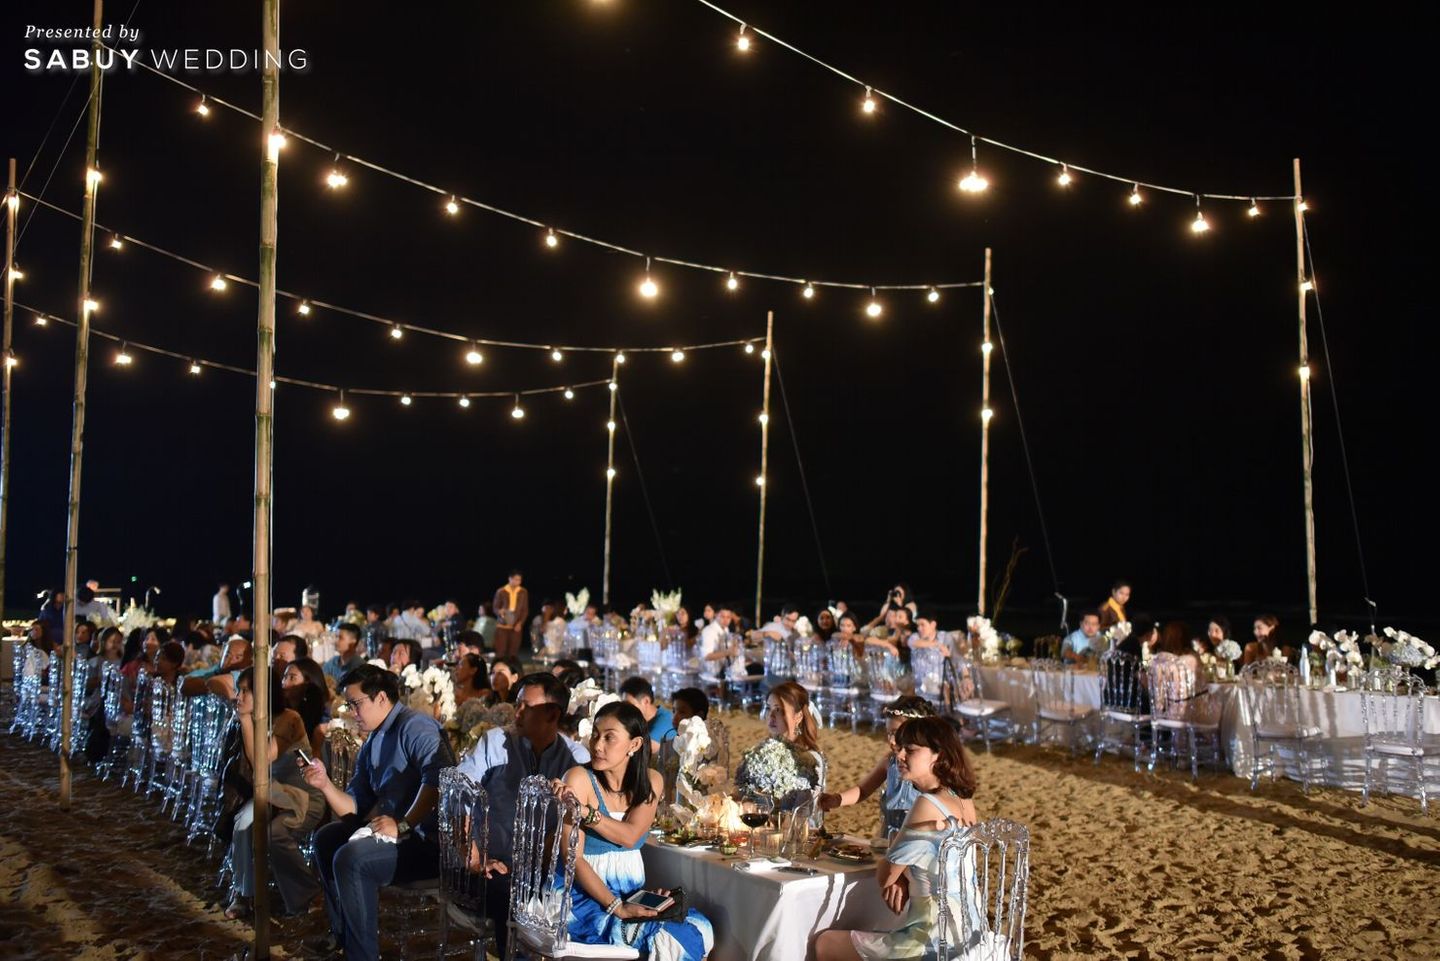 long-table,งานแต่งริมทะเล,งานแต่ง outdoor,สถานที่แต่งงาน,สถานที่จัดงานแต่งงาน รีวิวงานแต่งริมทะเลสุดแซ่บ ไม่เคร่งพิธี เน้นอาฟเตอร์ปาร์ตี้มันส์ๆ @Villa Maroc